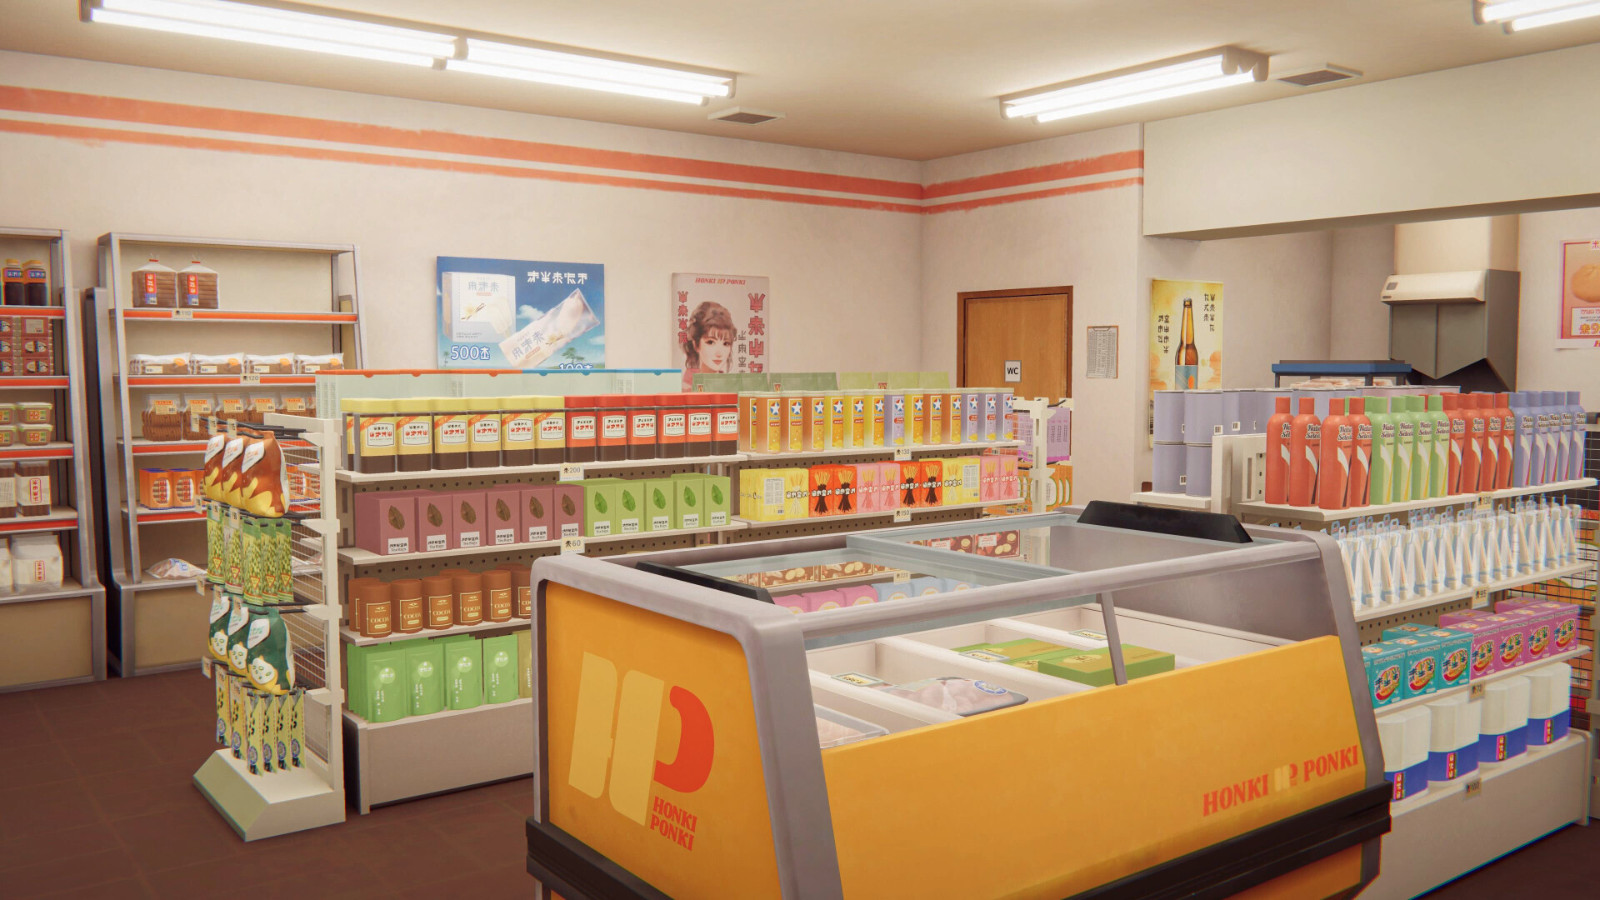 日式利便店模拟游戏《inKONBINI》后行预告 明年发售